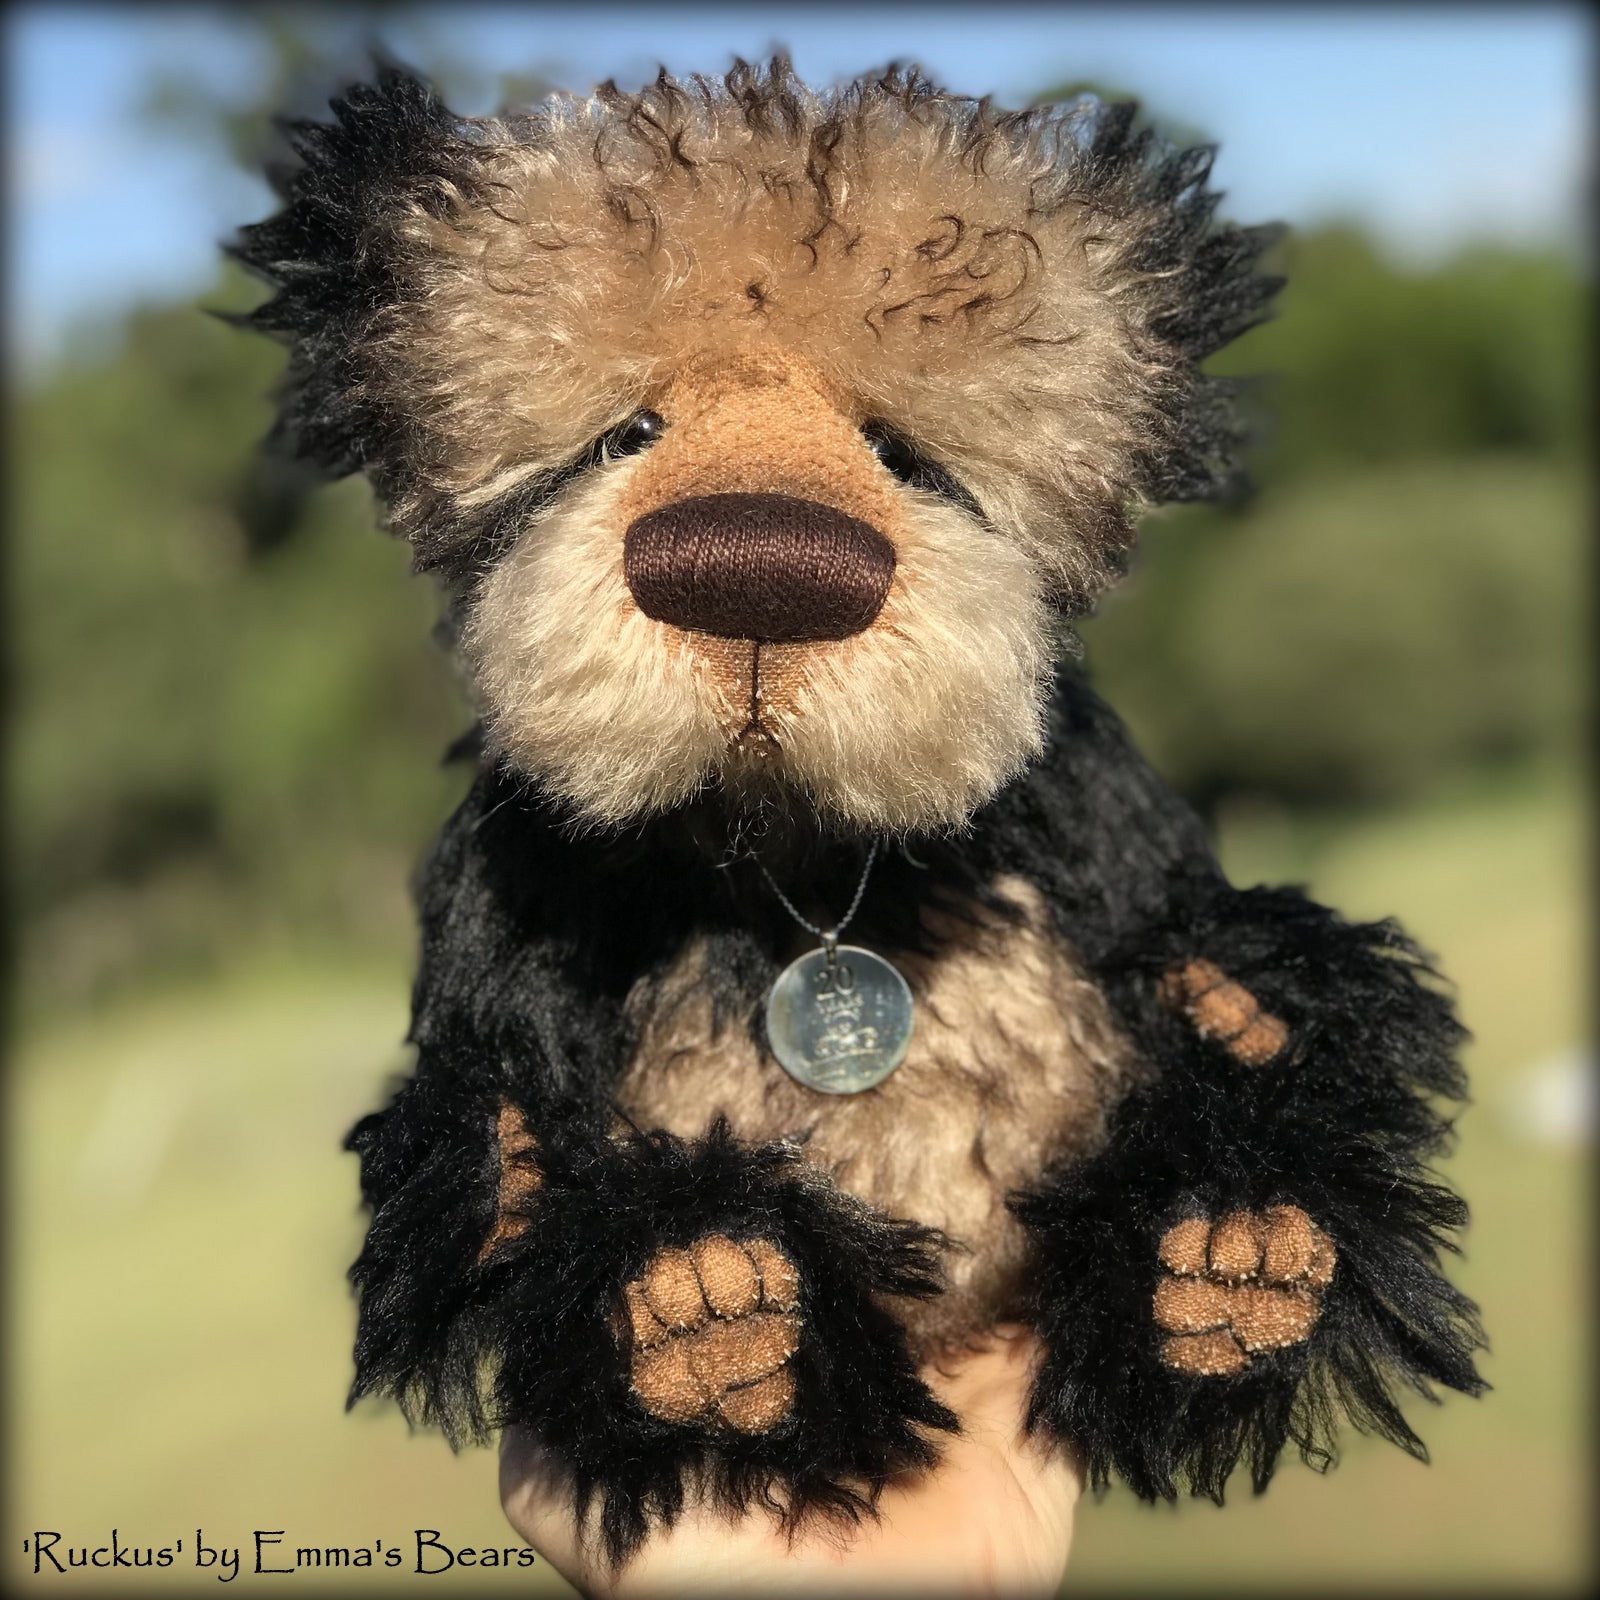 Ruckus - 20 Years of Emma's Bears Commemorative Teddy - OOAK in a series